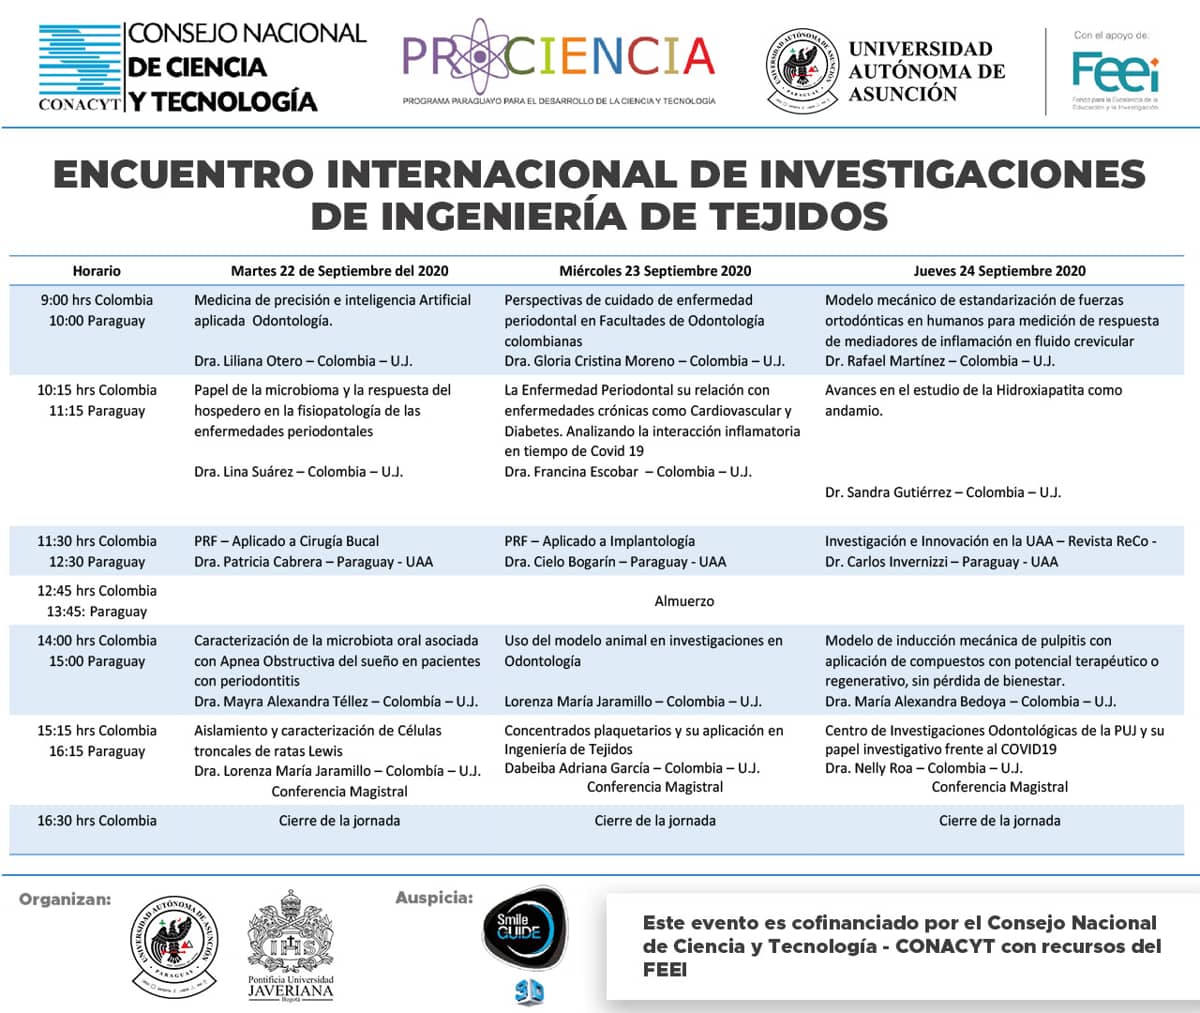 Encuentro Internacional de Investigaciones de Ingeniería de Tejidos - Programas